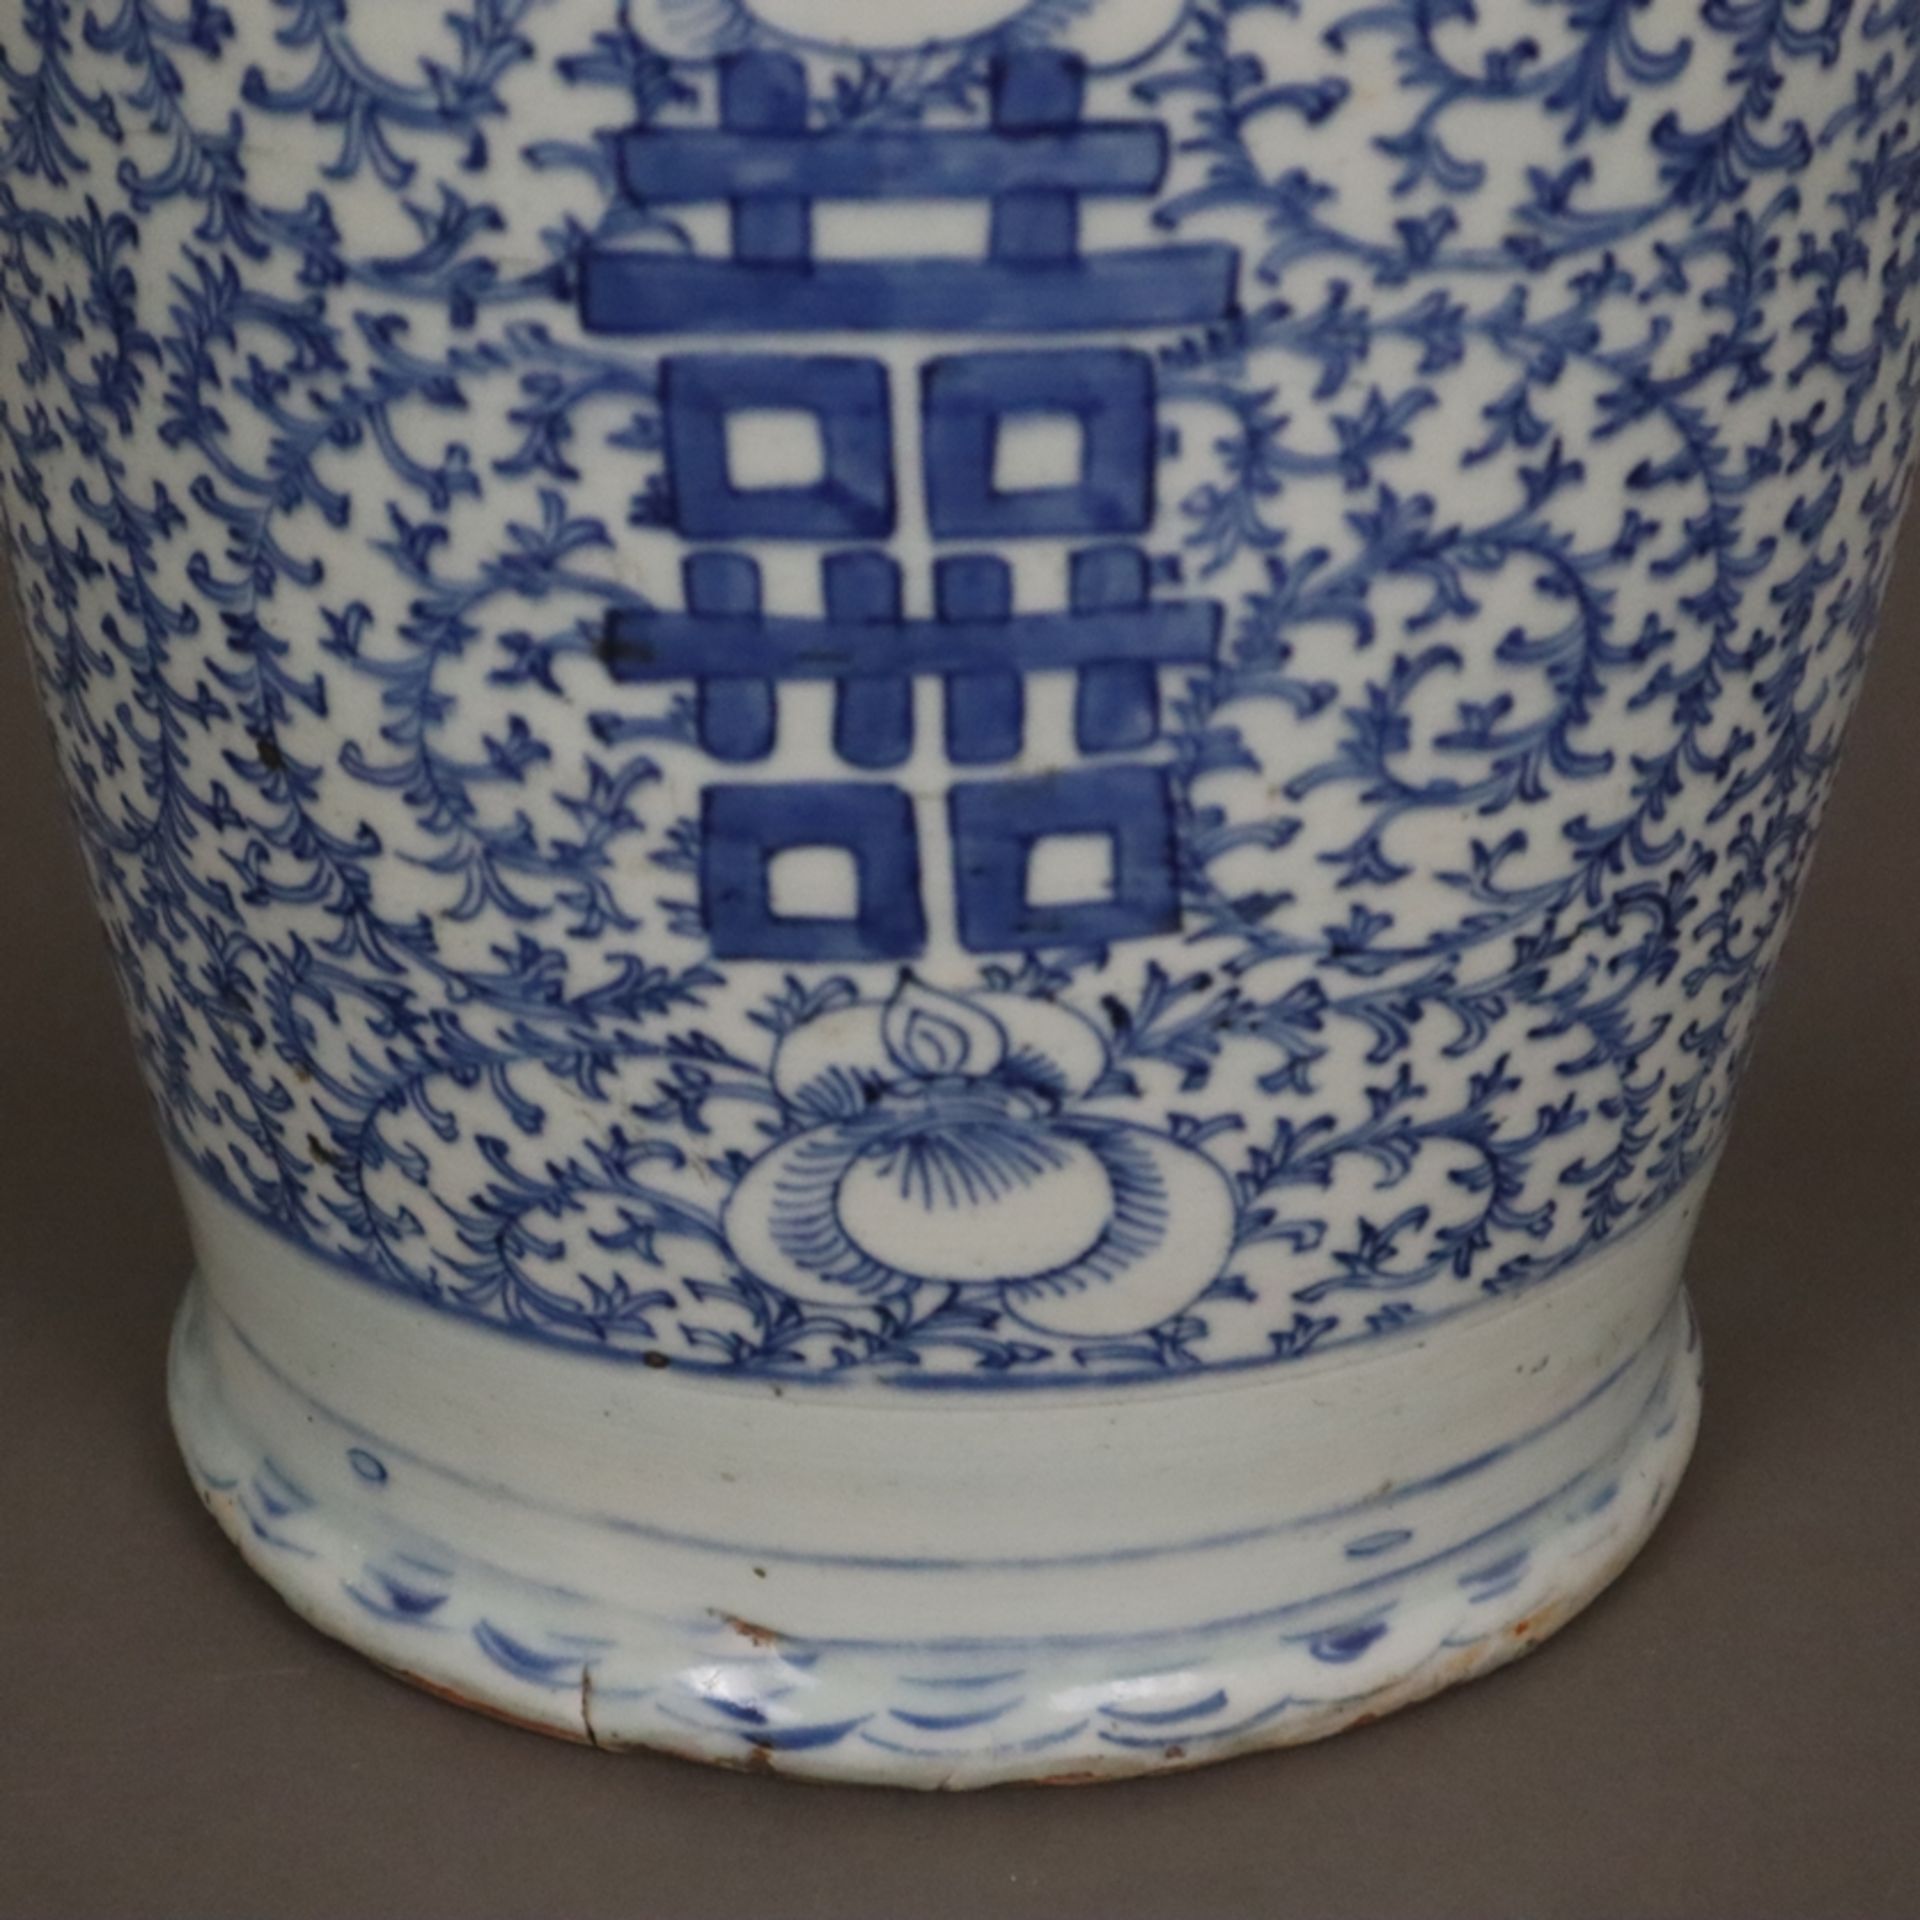 Blau-weiße Bodenvase - China, späte Qing-Dynastie, Tongzhi 1862-1875, sog. „Hochzeitsvase“, auf der - Bild 7 aus 14